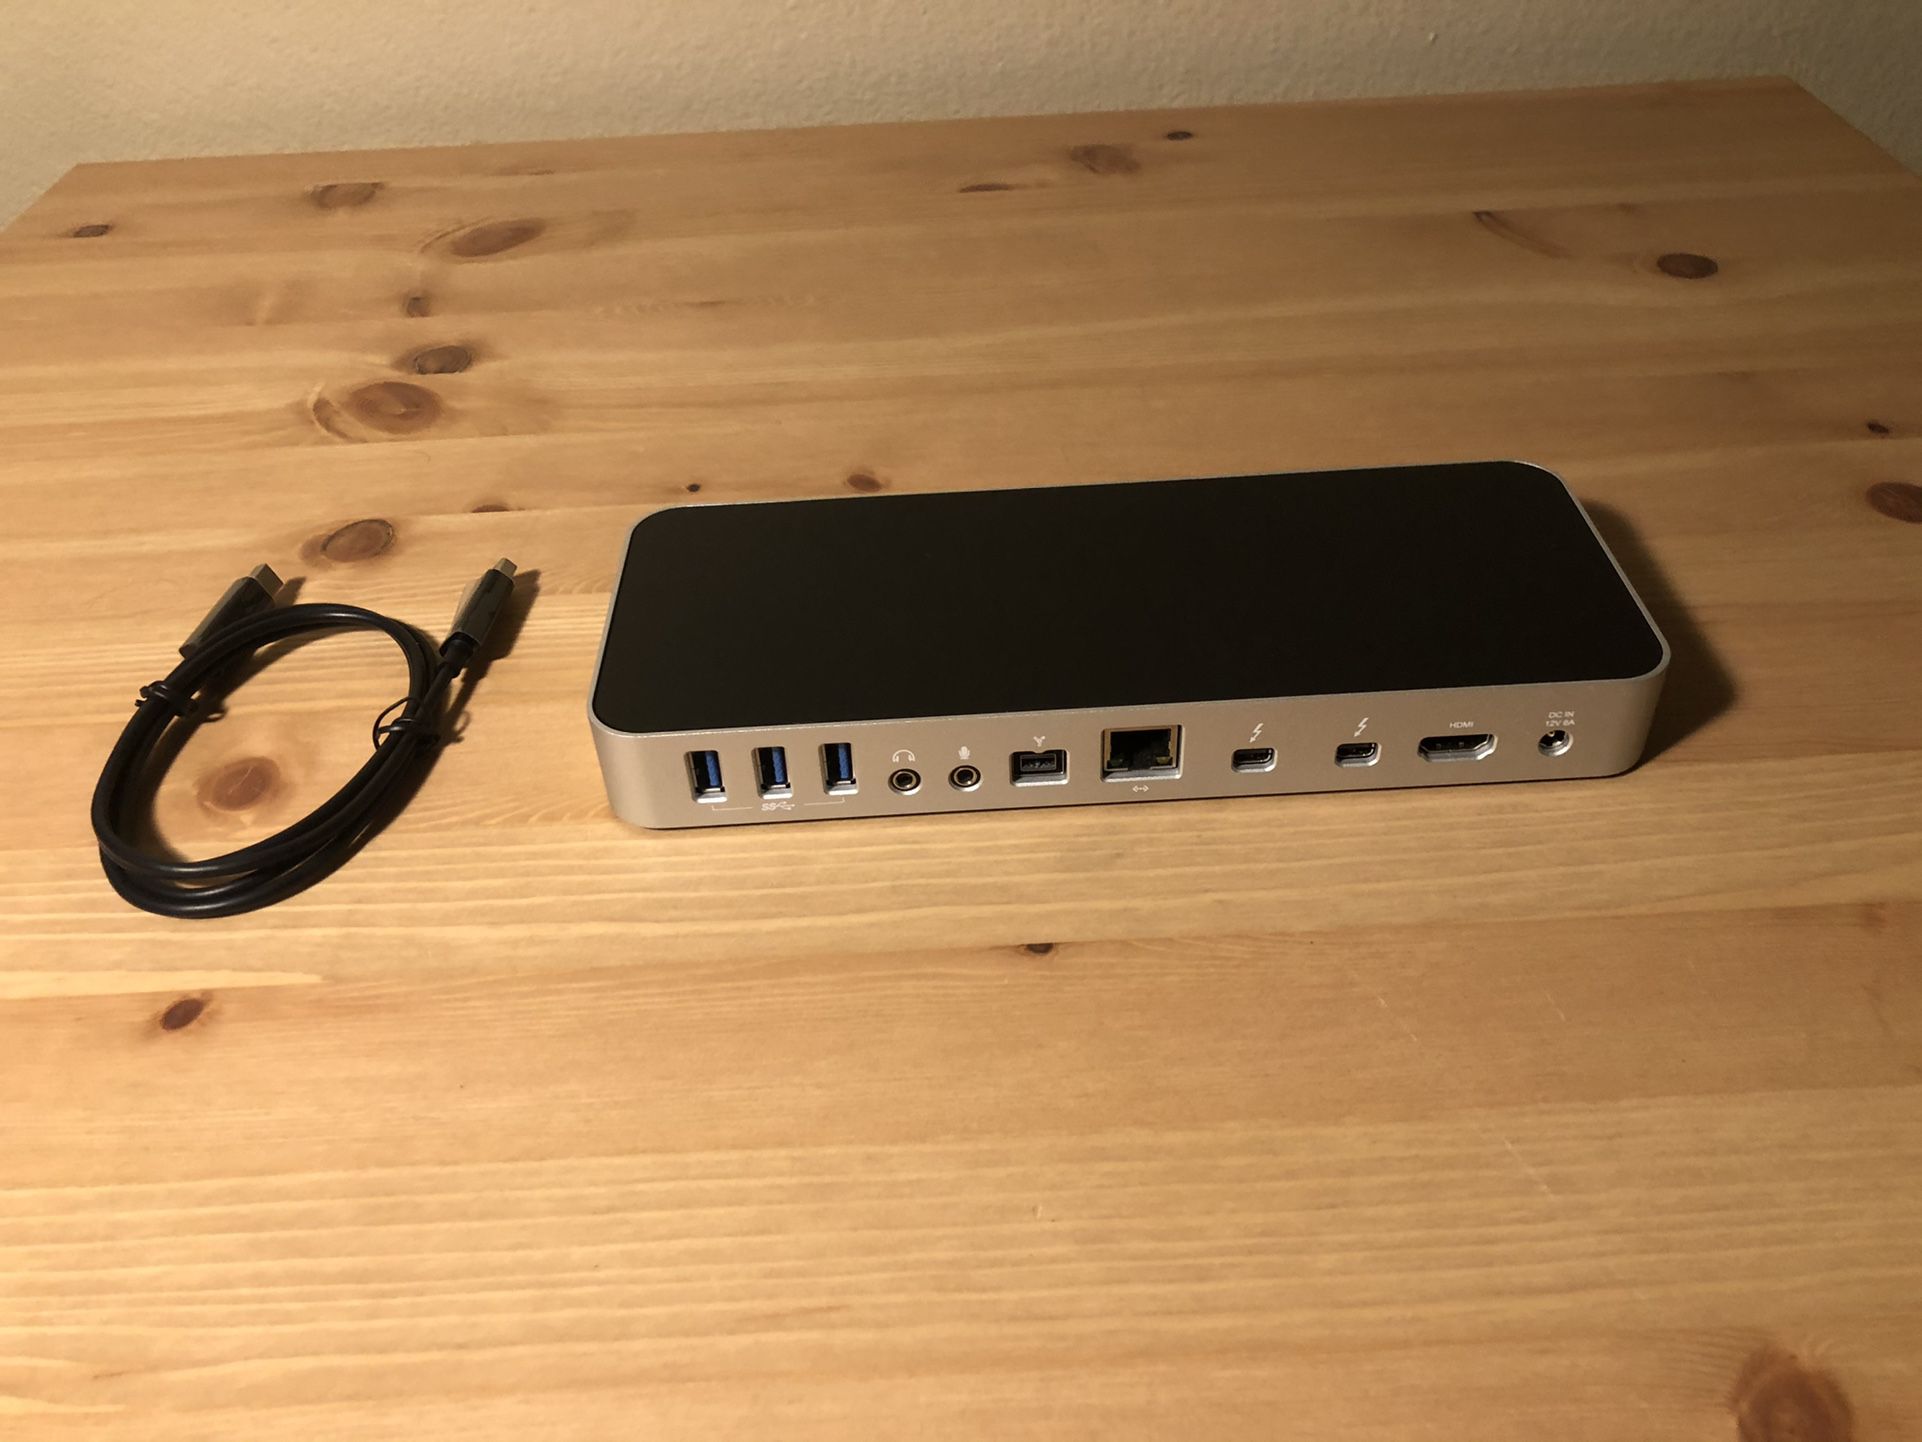 OWC Thunderbolt 2 Dock for Mac FW800 USB 3.1 Gen 1 HDMI Part No OWCTB2DOCK12P